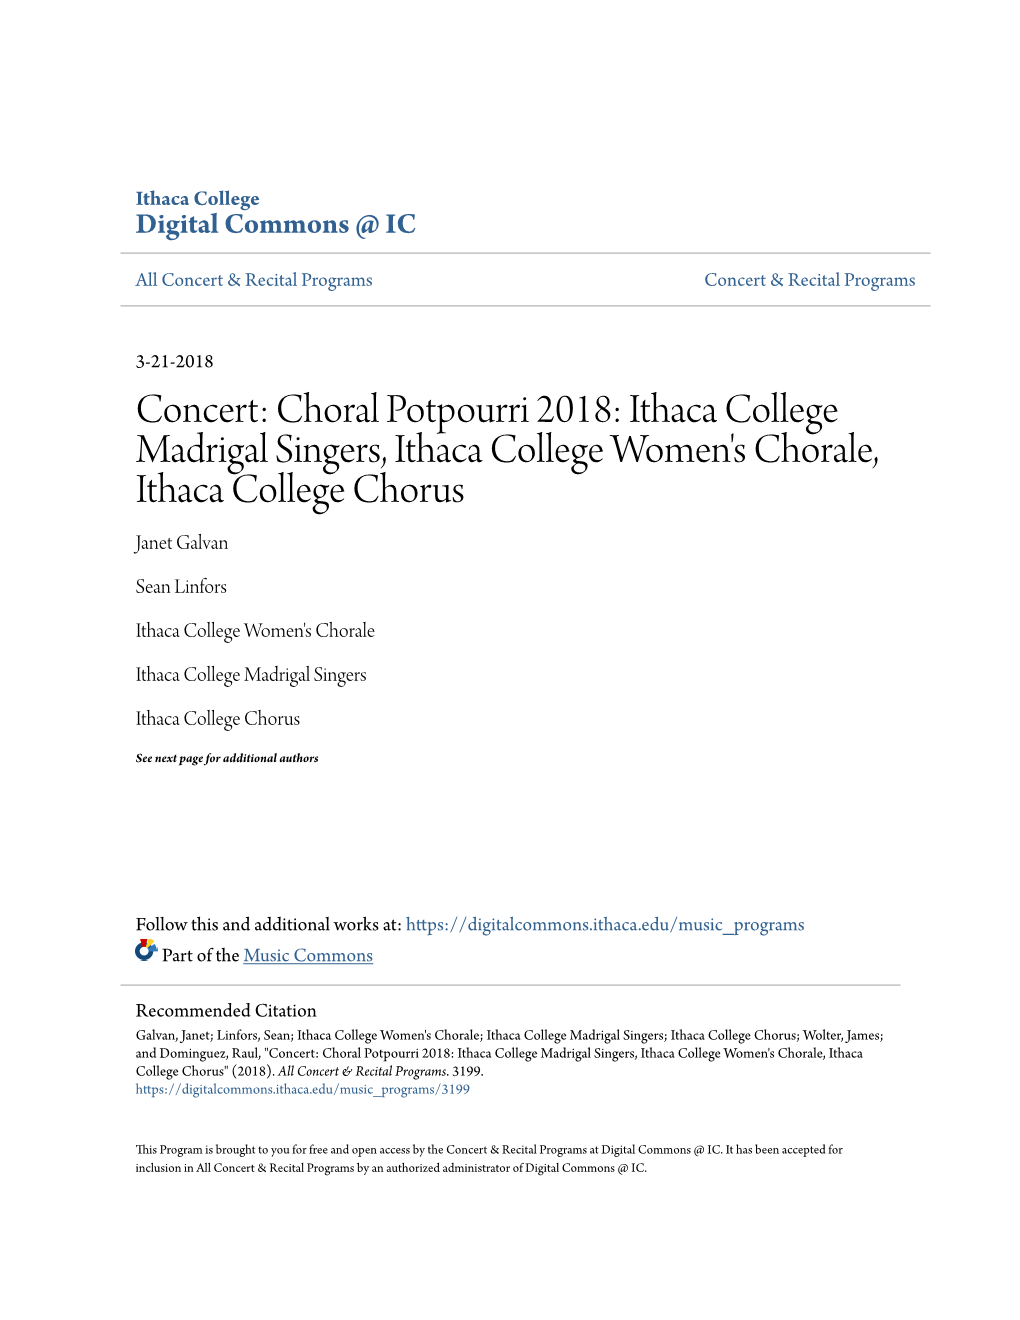 Concert: Choral Potpourri 2018: Ithaca College Madrigal Singers, Ithaca College Women's Chorale, Ithaca College Chorus Janet Galvan